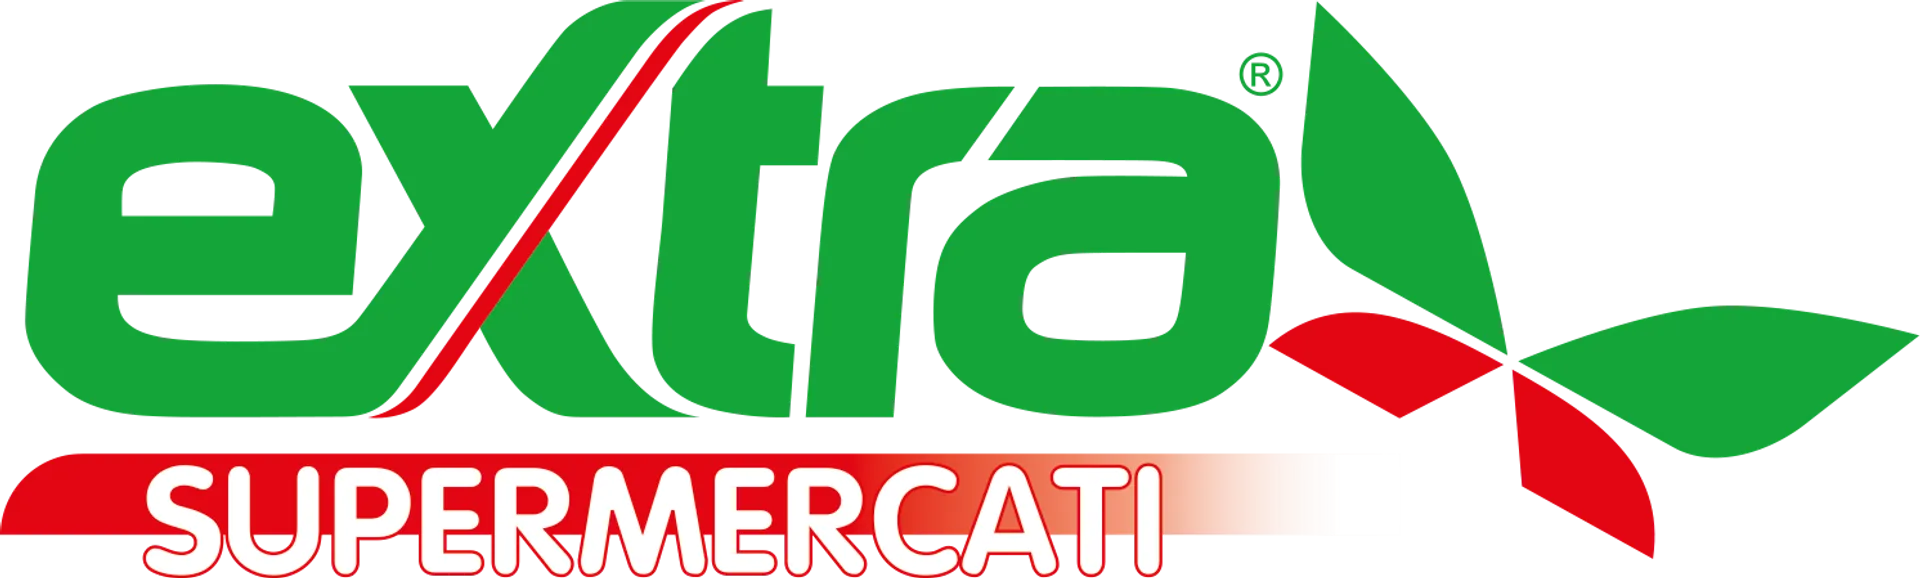 EXTRA SUPERMERCATI logo